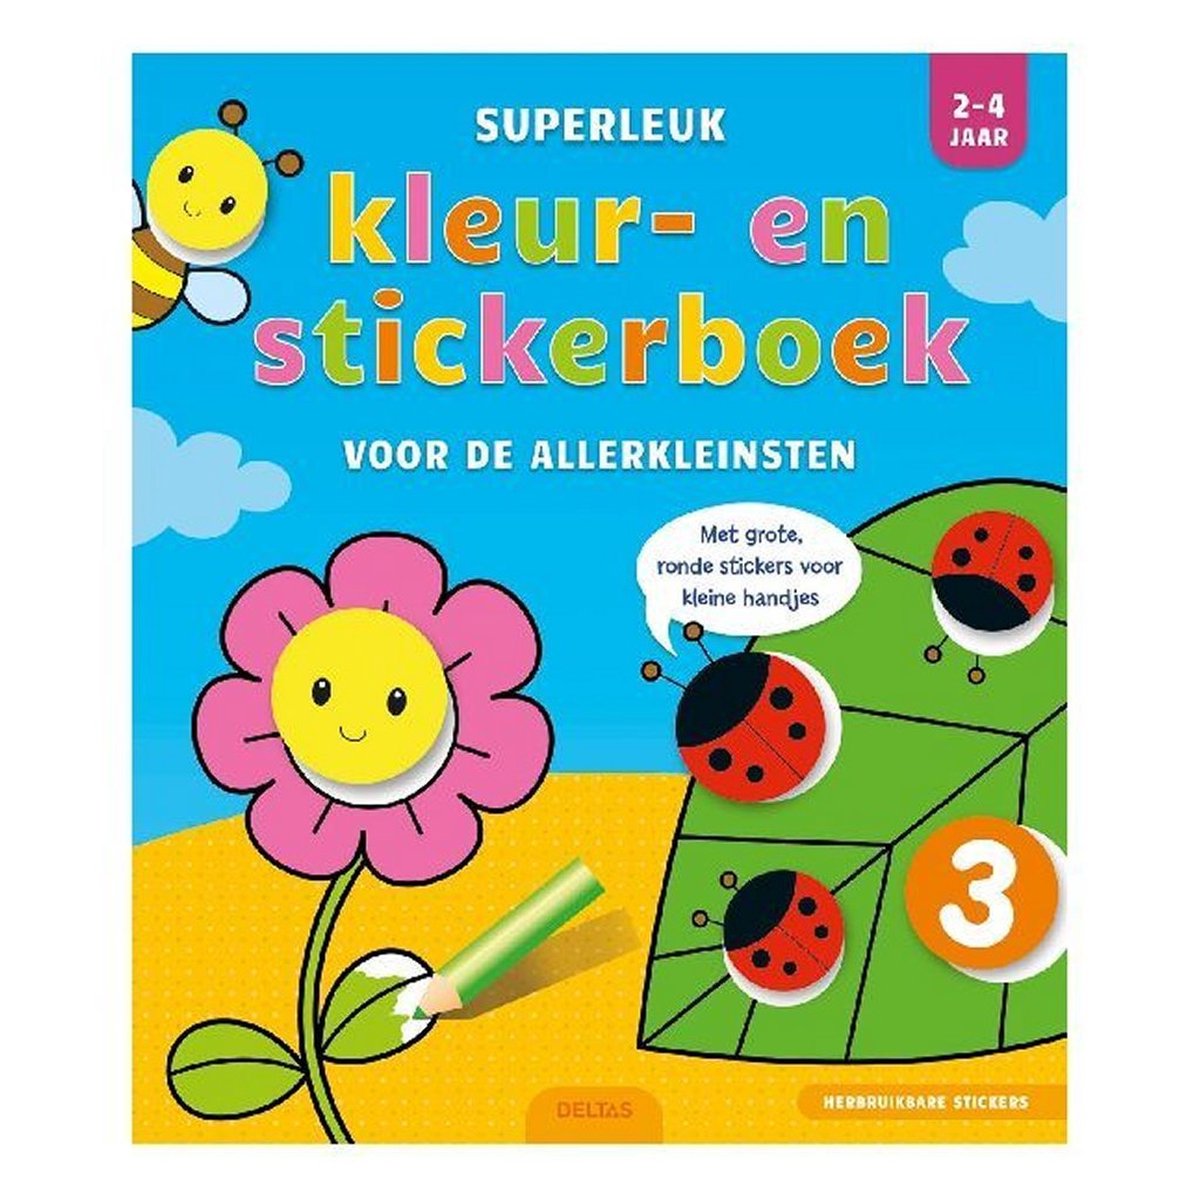 Superleuk kleur- en stickerboek voor de allerkleinsten 2-4 jaar - Deltas/Chantecler